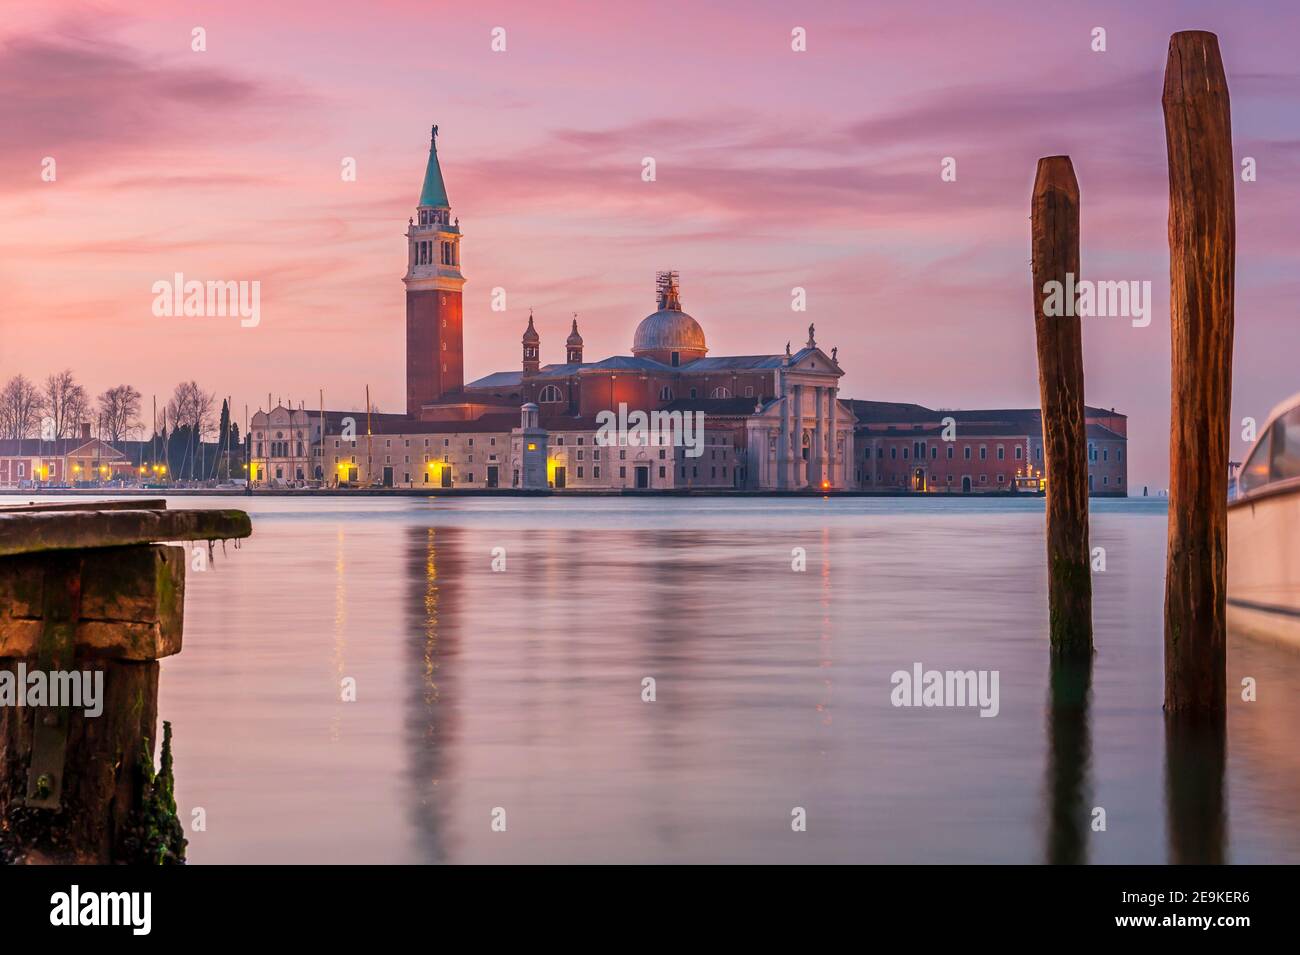 Île de San Giorgio Maggiore en arrière-plan dans la lagune de Venise en Vénétie, Italie Banque D'Images